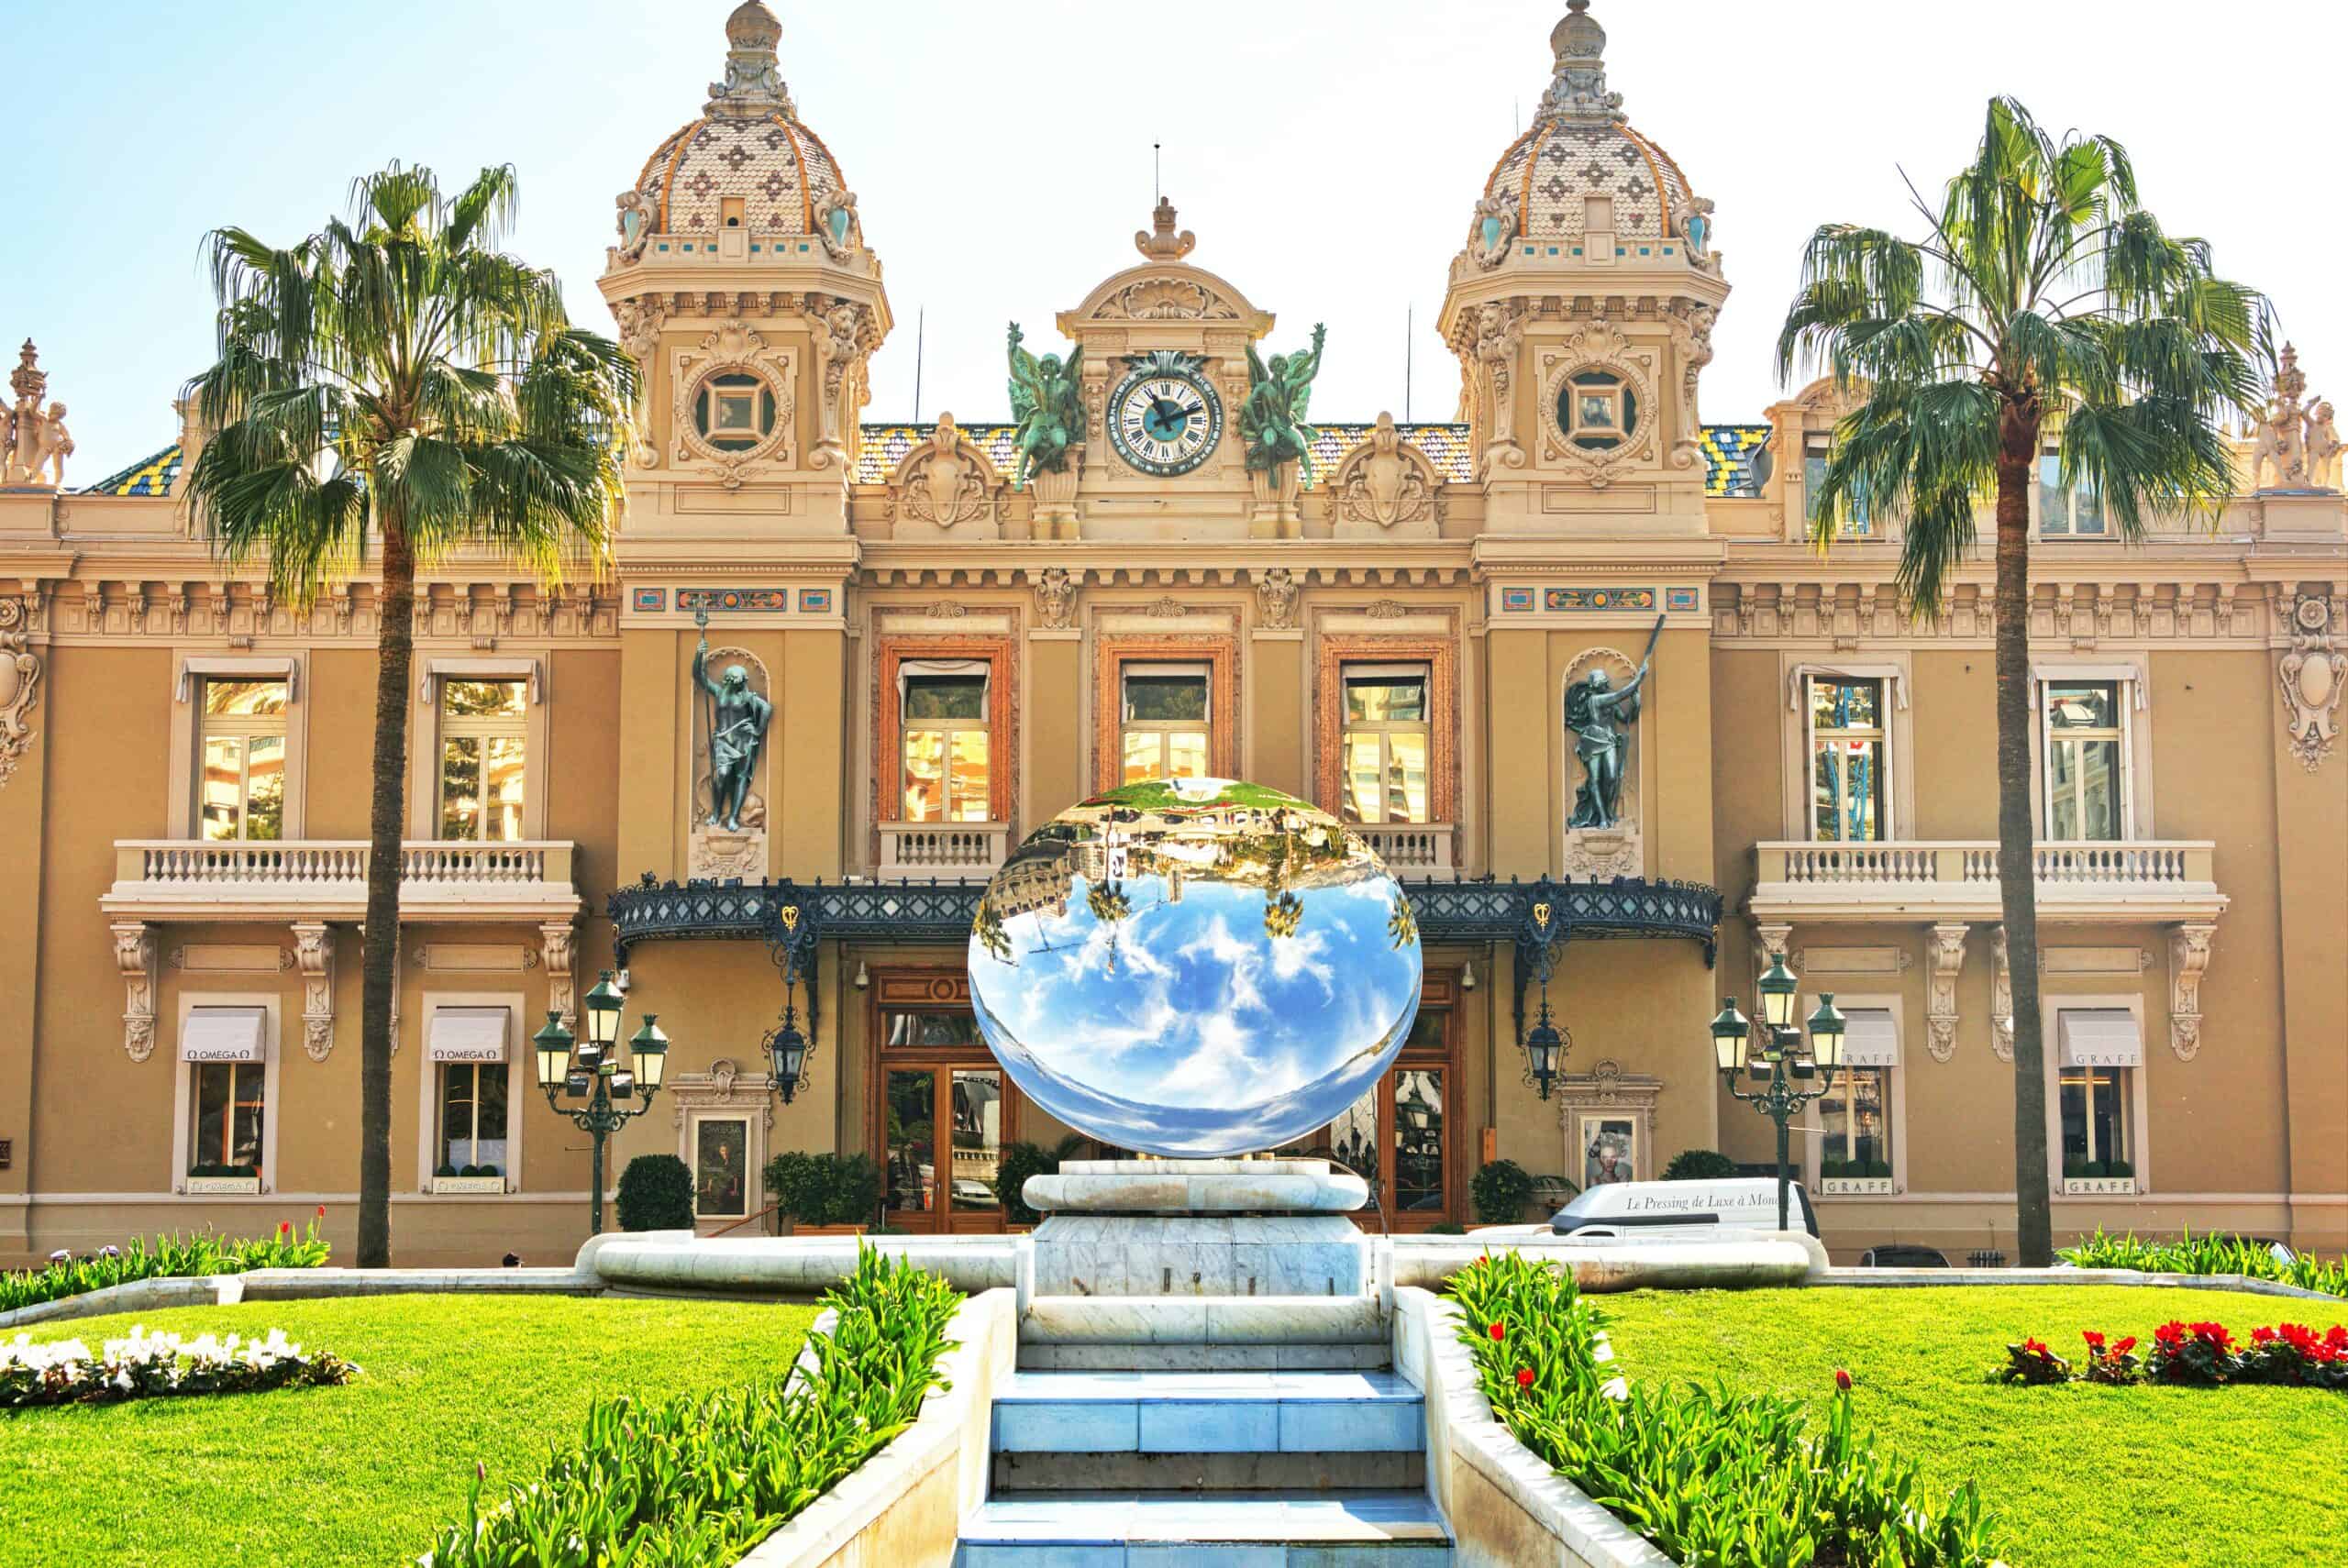 Casino de Monte Carlo